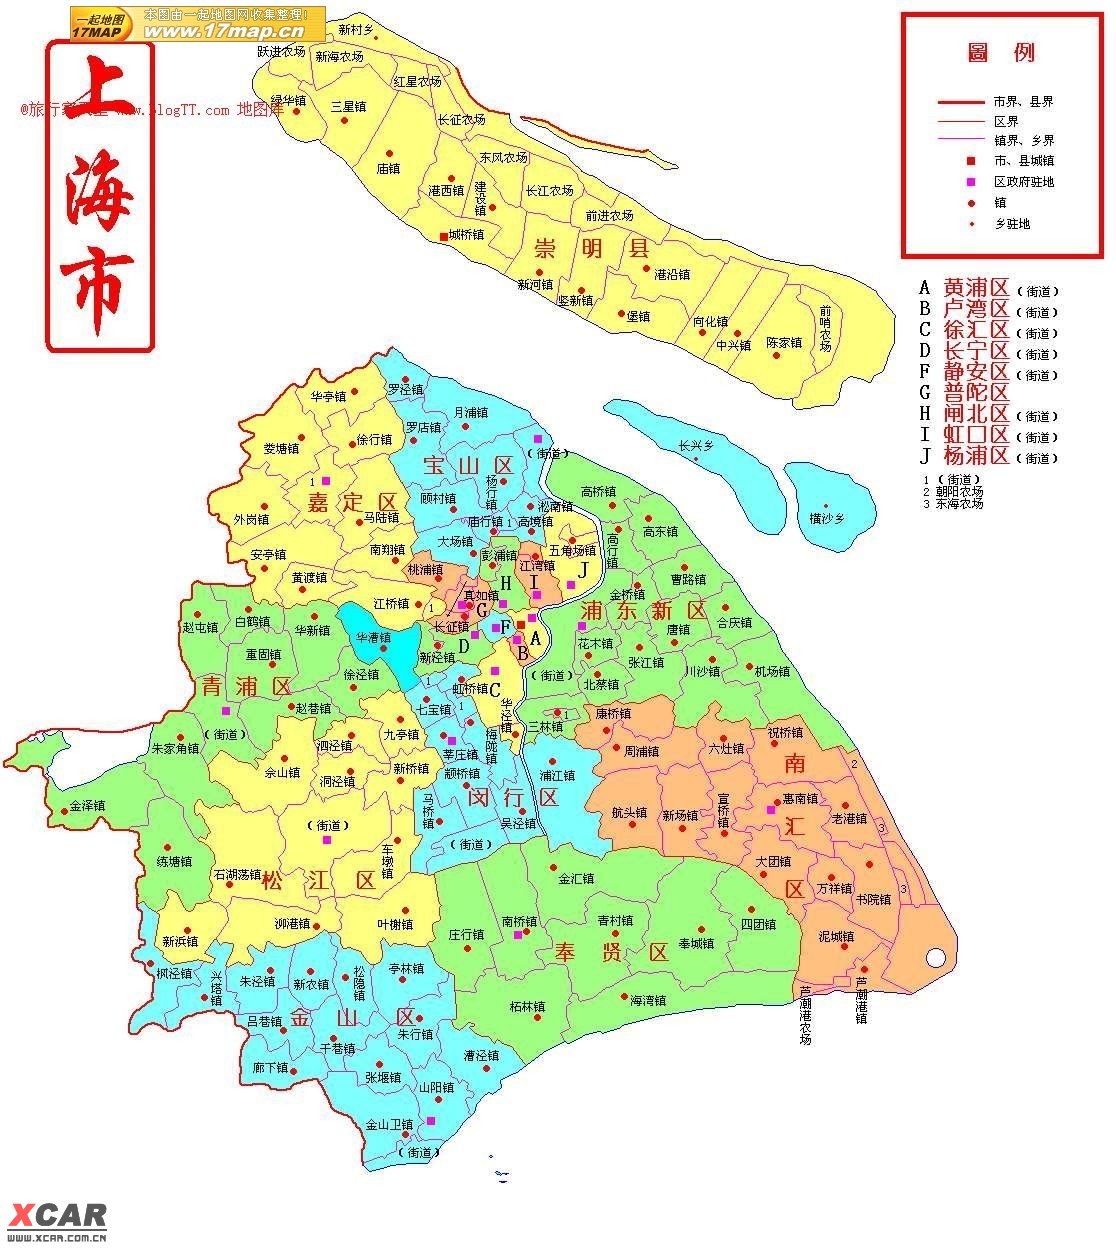 2019上海市地图高清全图 上海地图全图可放大